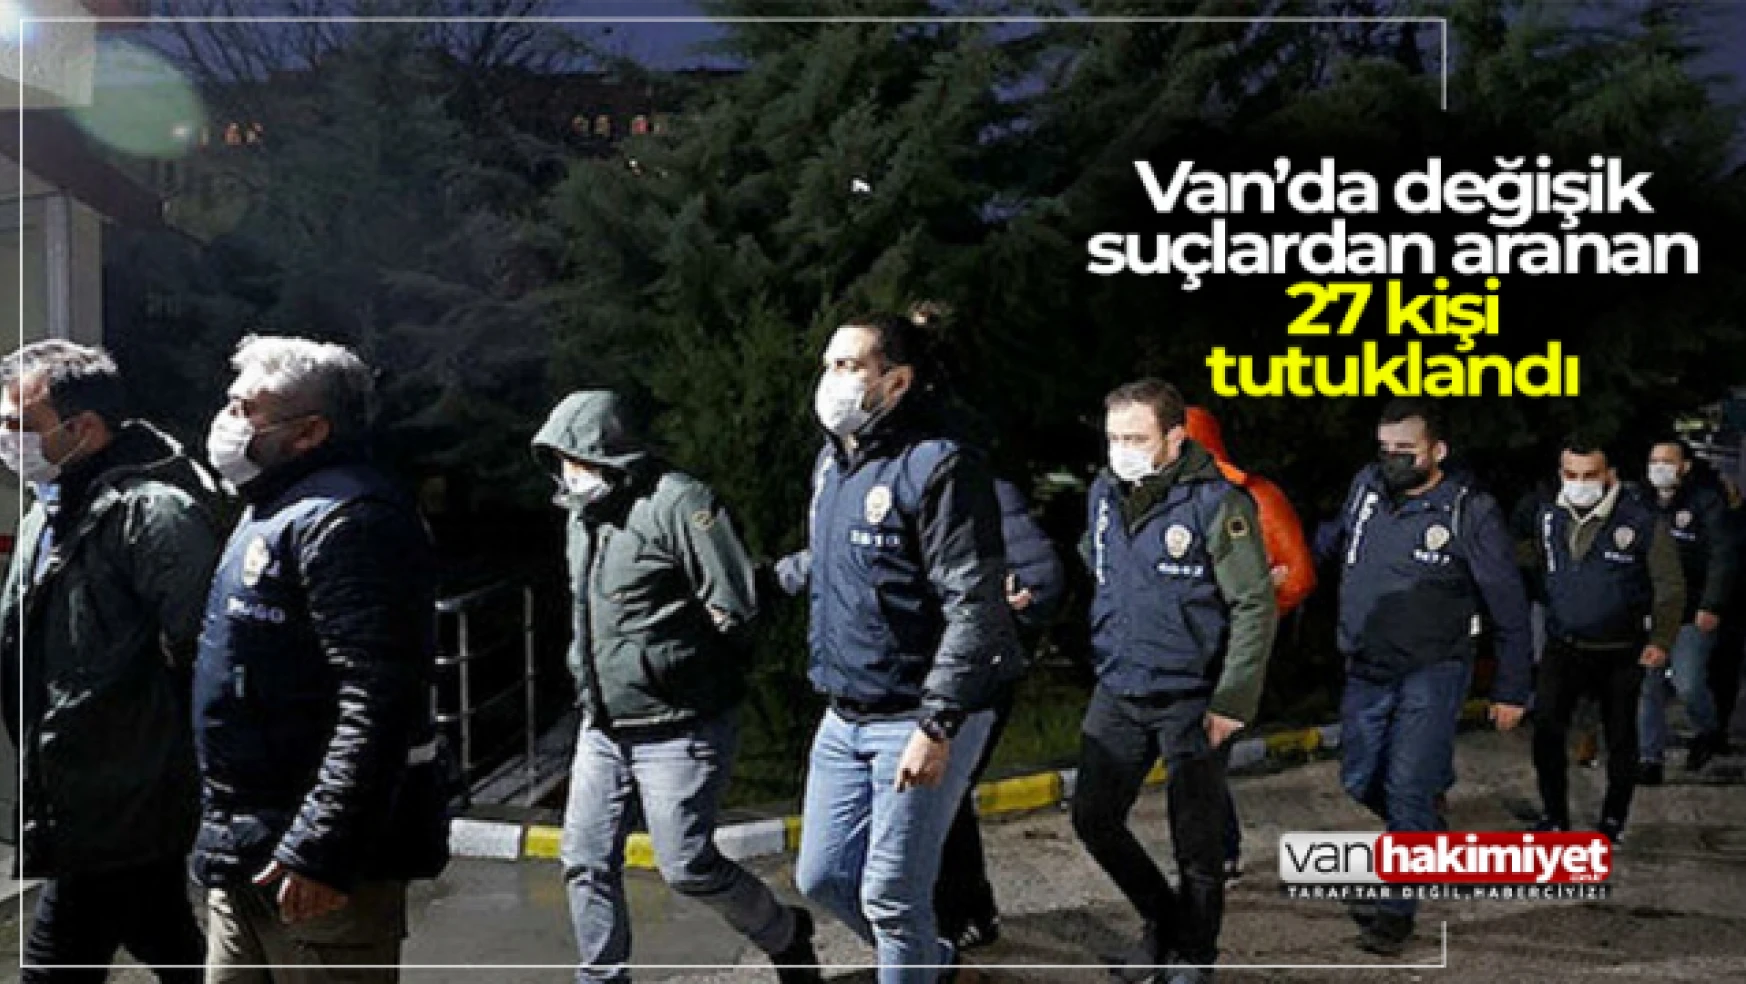 Van'da değişik suçlardan 27 kişi tutuklandı